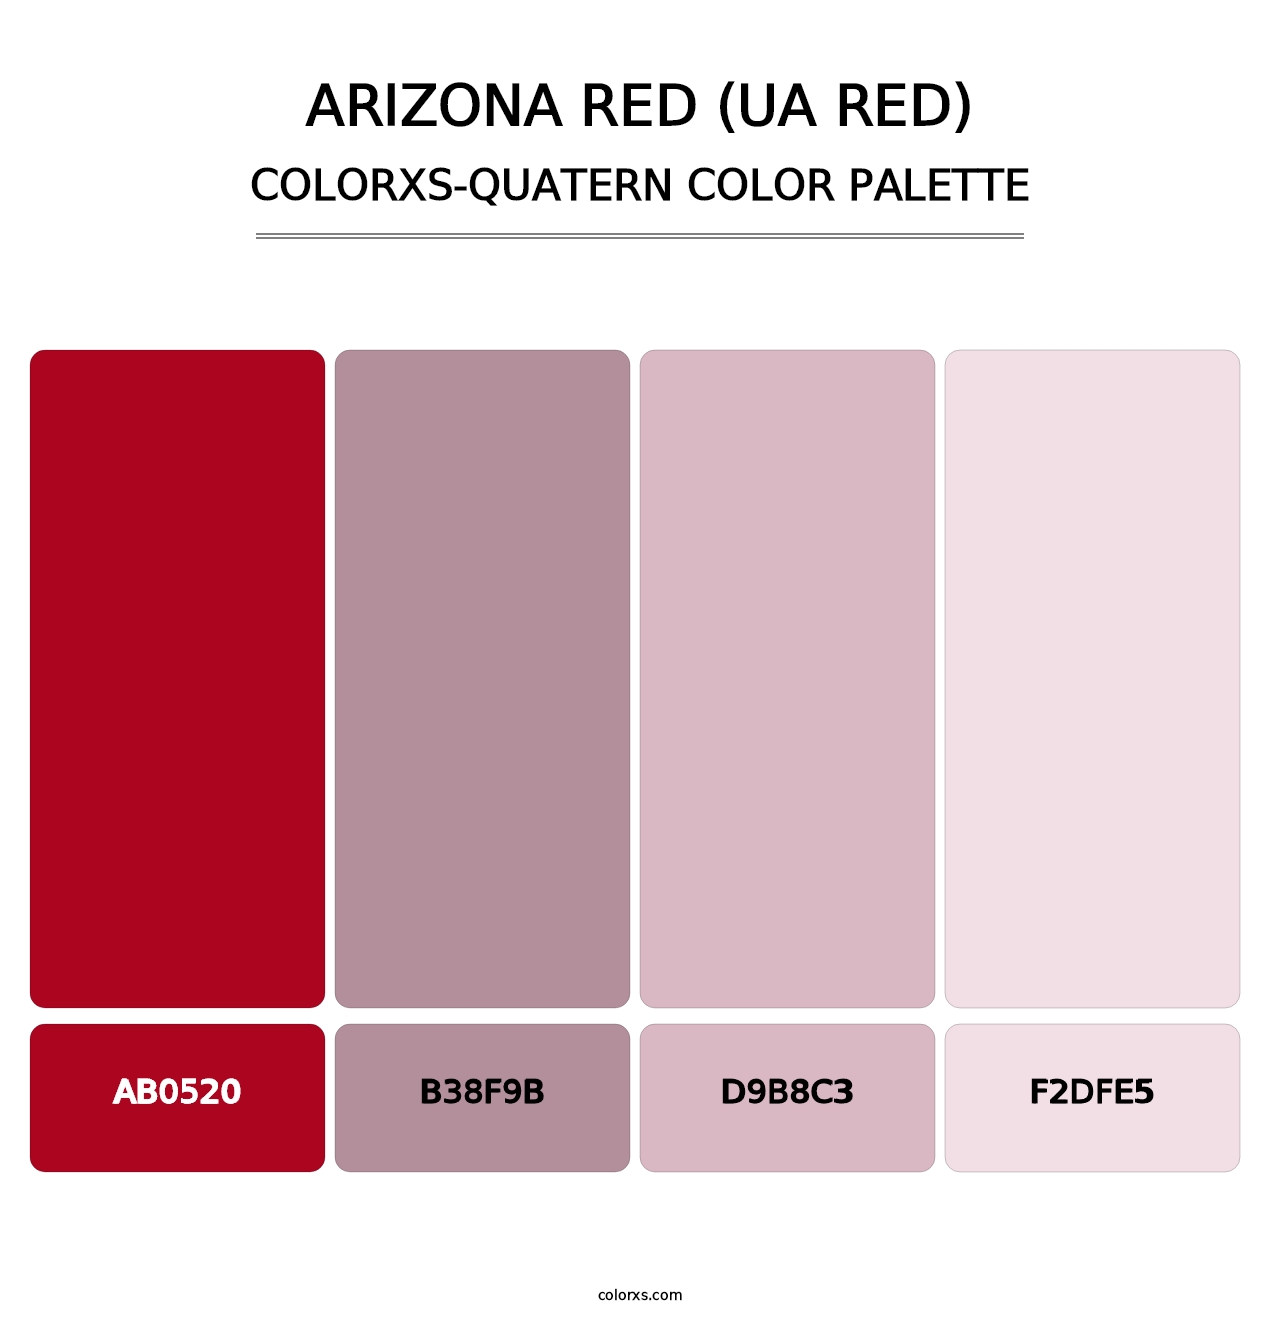 Arizona Red (UA Red) - Colorxs Quatern Palette